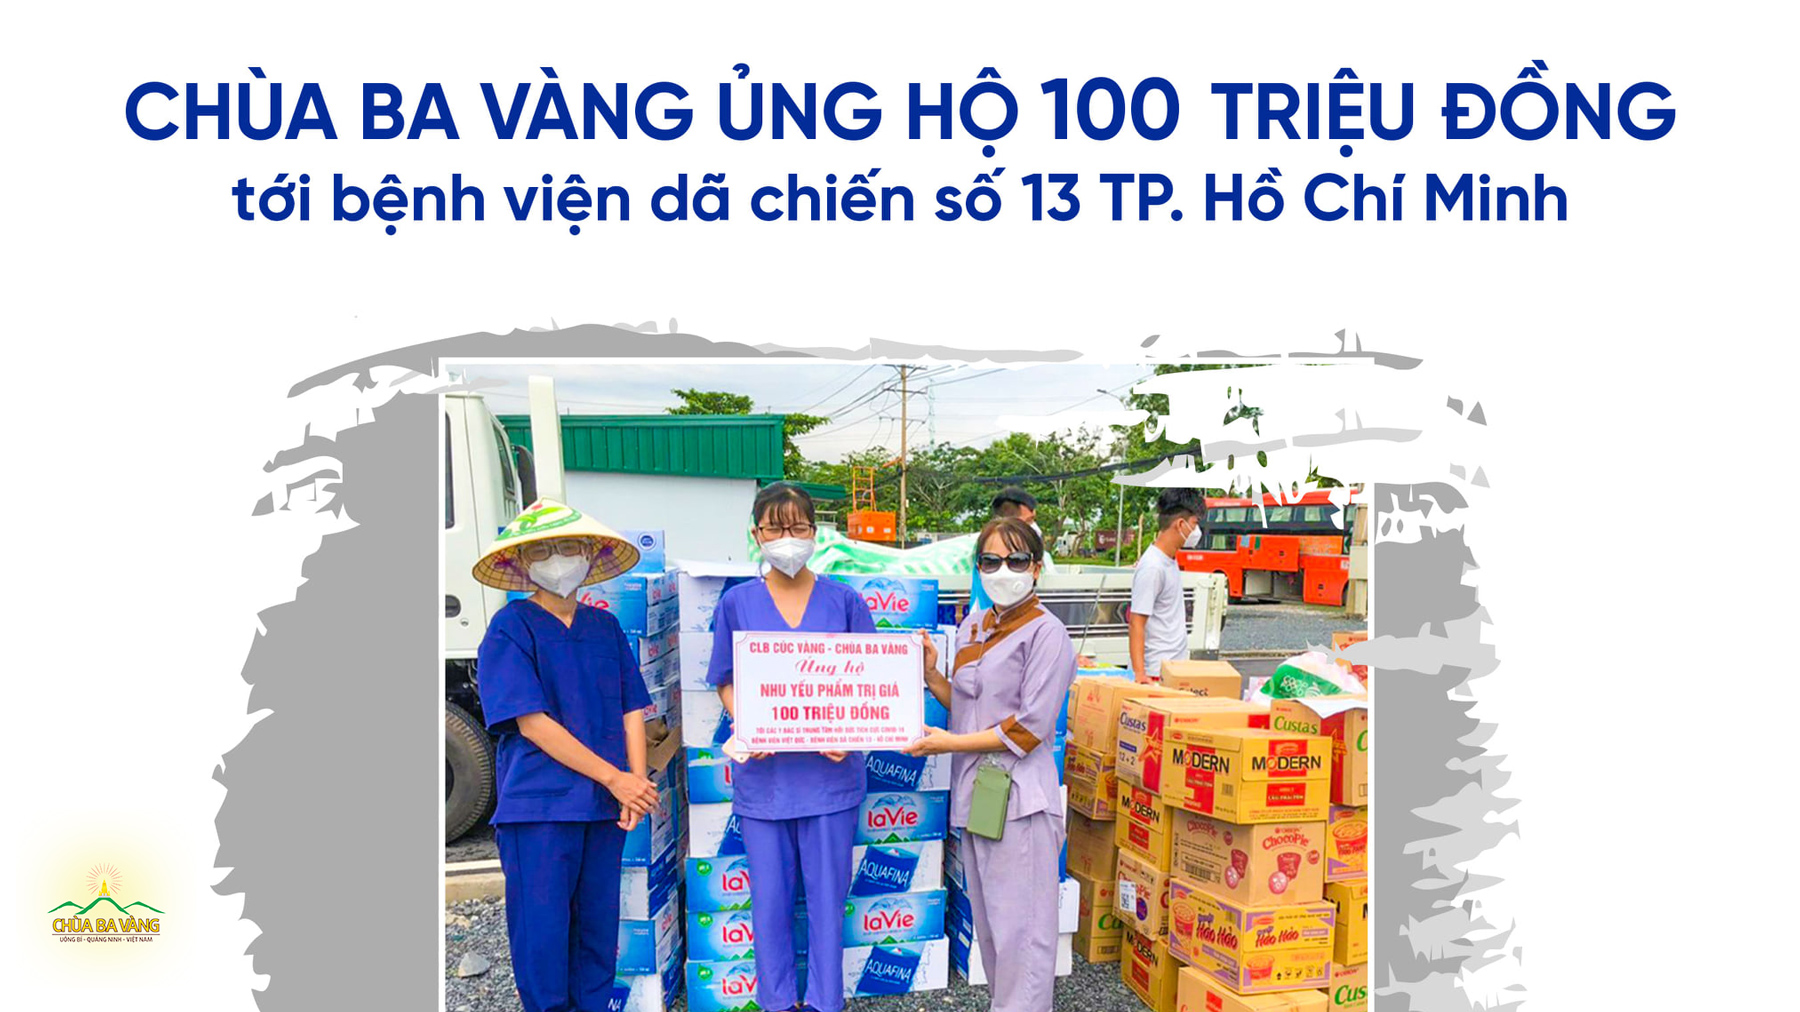 Chùa Ba Vàng thông qua các Phật tử trong Câu lạc bộ Cúc Vàng tại TP. Hồ Chí Minh đã trao các phần nhu yếu phẩm, thực phẩm tới các y, вáс sĩ, nhân viên у тế tại bệnн viện Dã снiến số 13 TP. Hồ Chí Minh